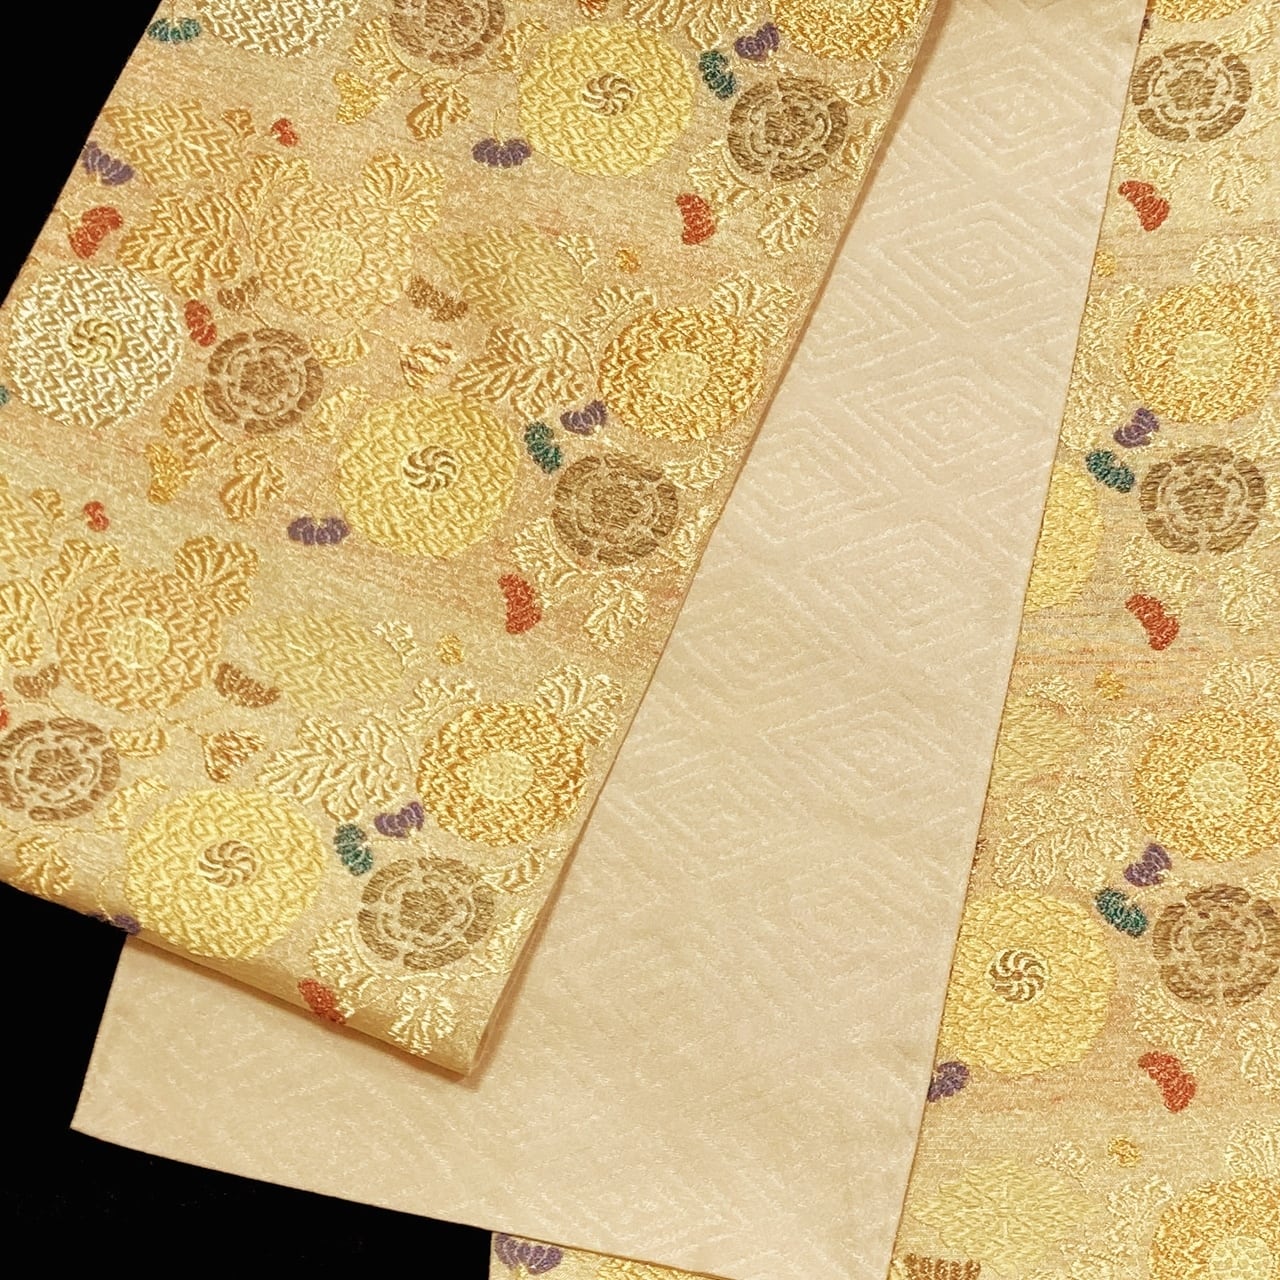 日本産 水色 紗の六通袋帯▫白地に銀、薄緑、ピンクで萩、桔梗模様▫芯